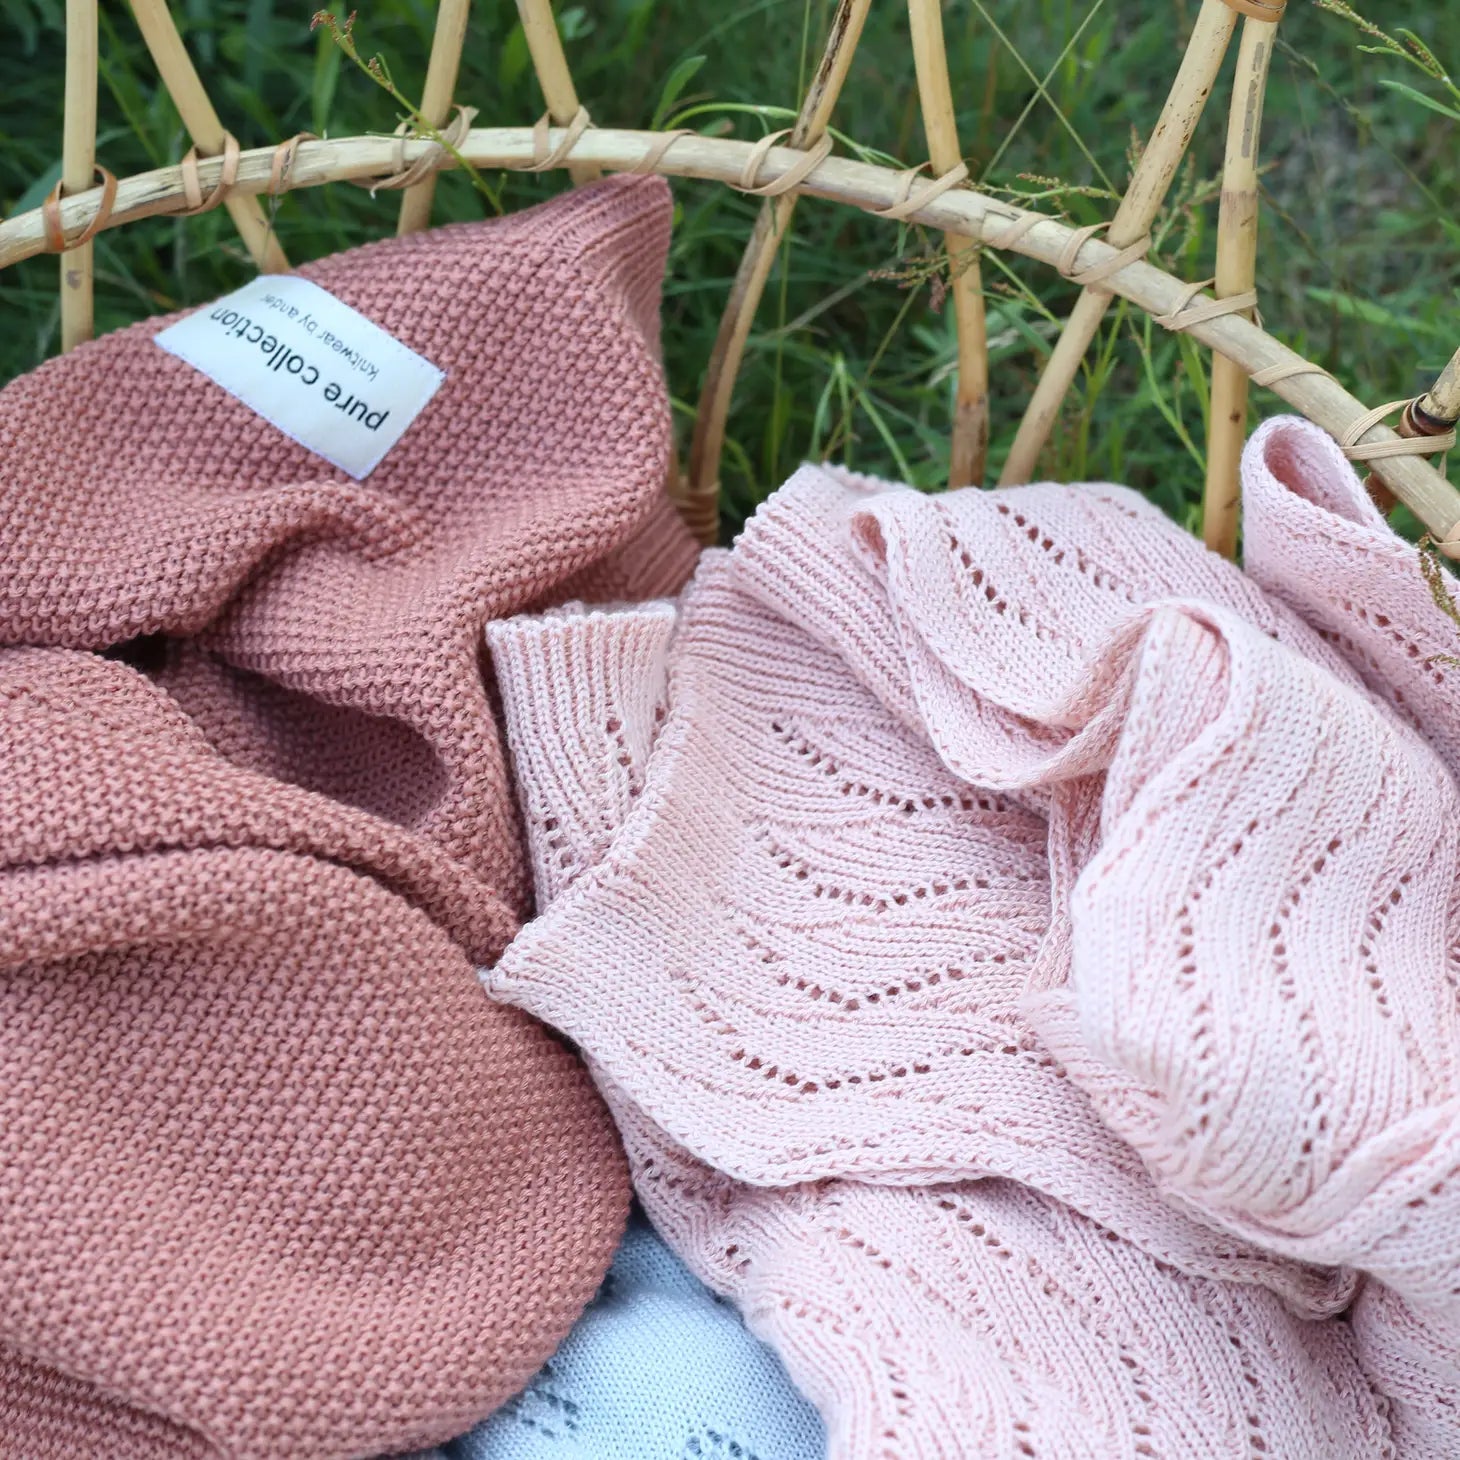 Ander - 100% Merino Wool Blanket Abate - Knitted pattern Almond - Playlaan